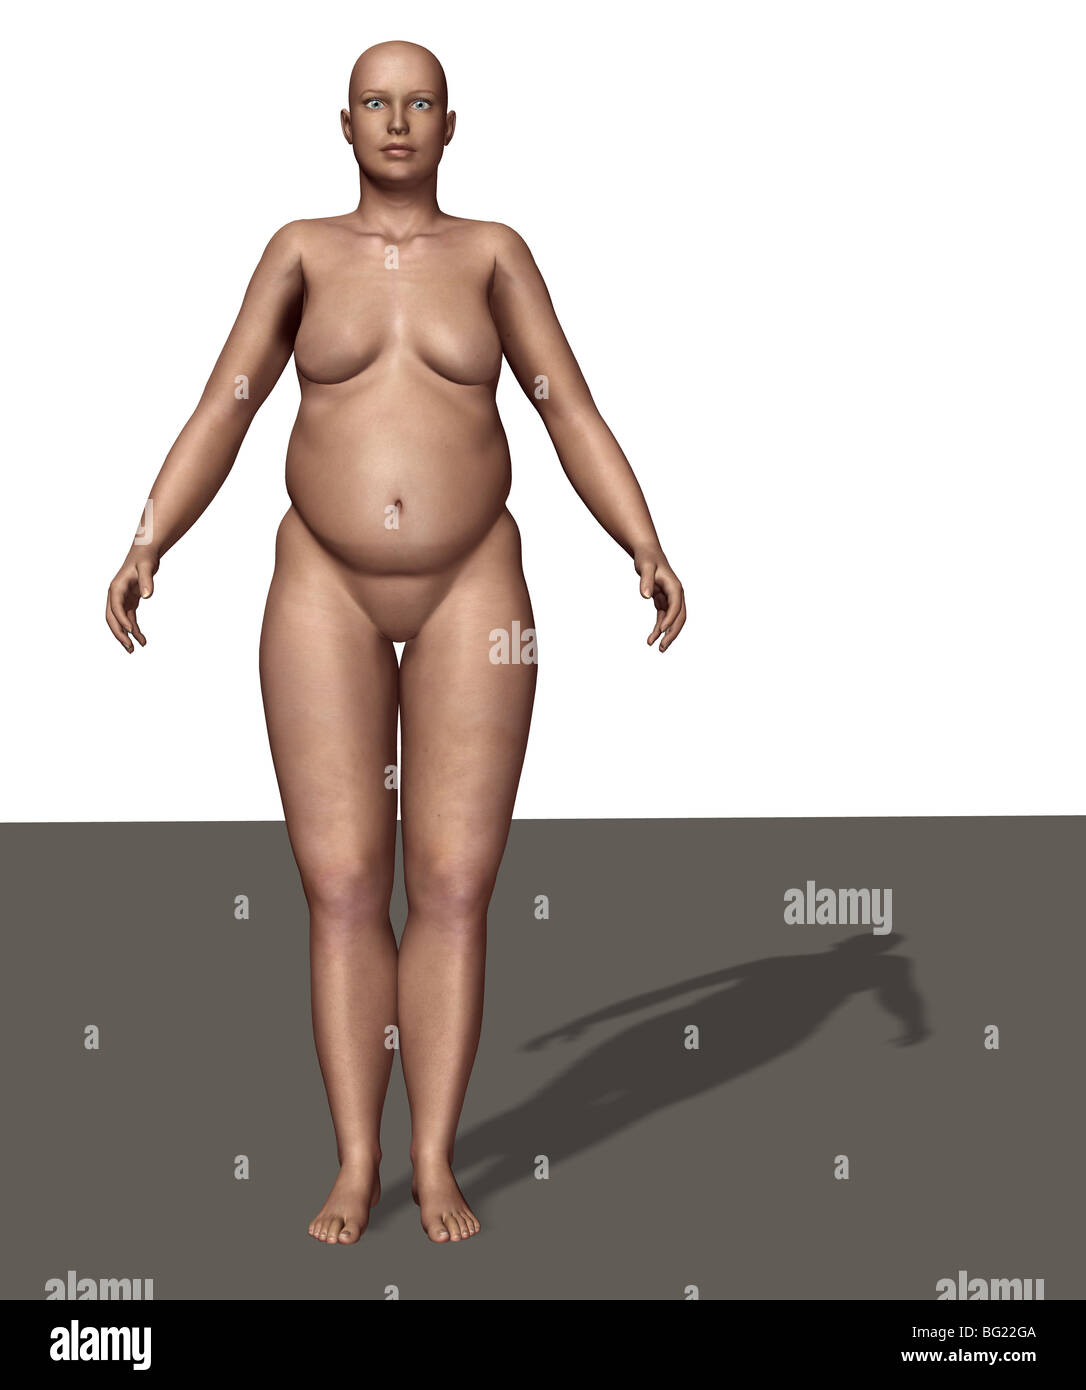 https://c8.alamy.com/comp/BG22GA/illustration-of-a-female-human-body-type-endomorph-BG22GA.jpg